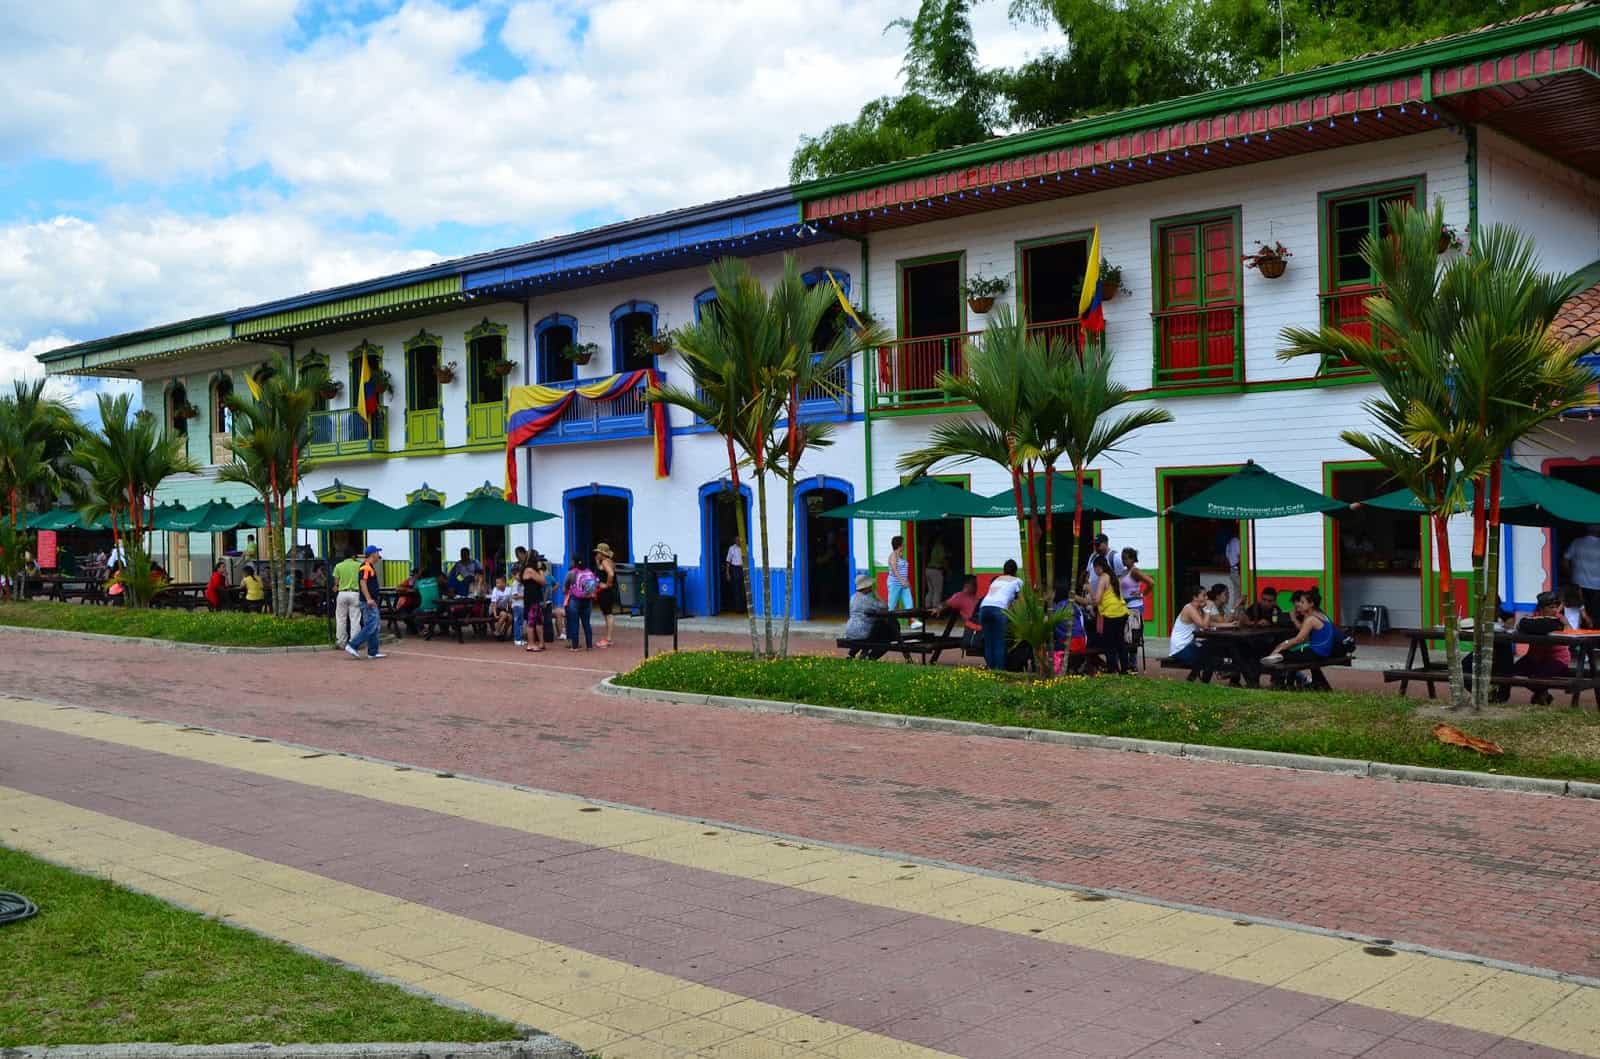 Parque del Cafe in Armenia, Quindio, Colombia — Nate In Yo' State